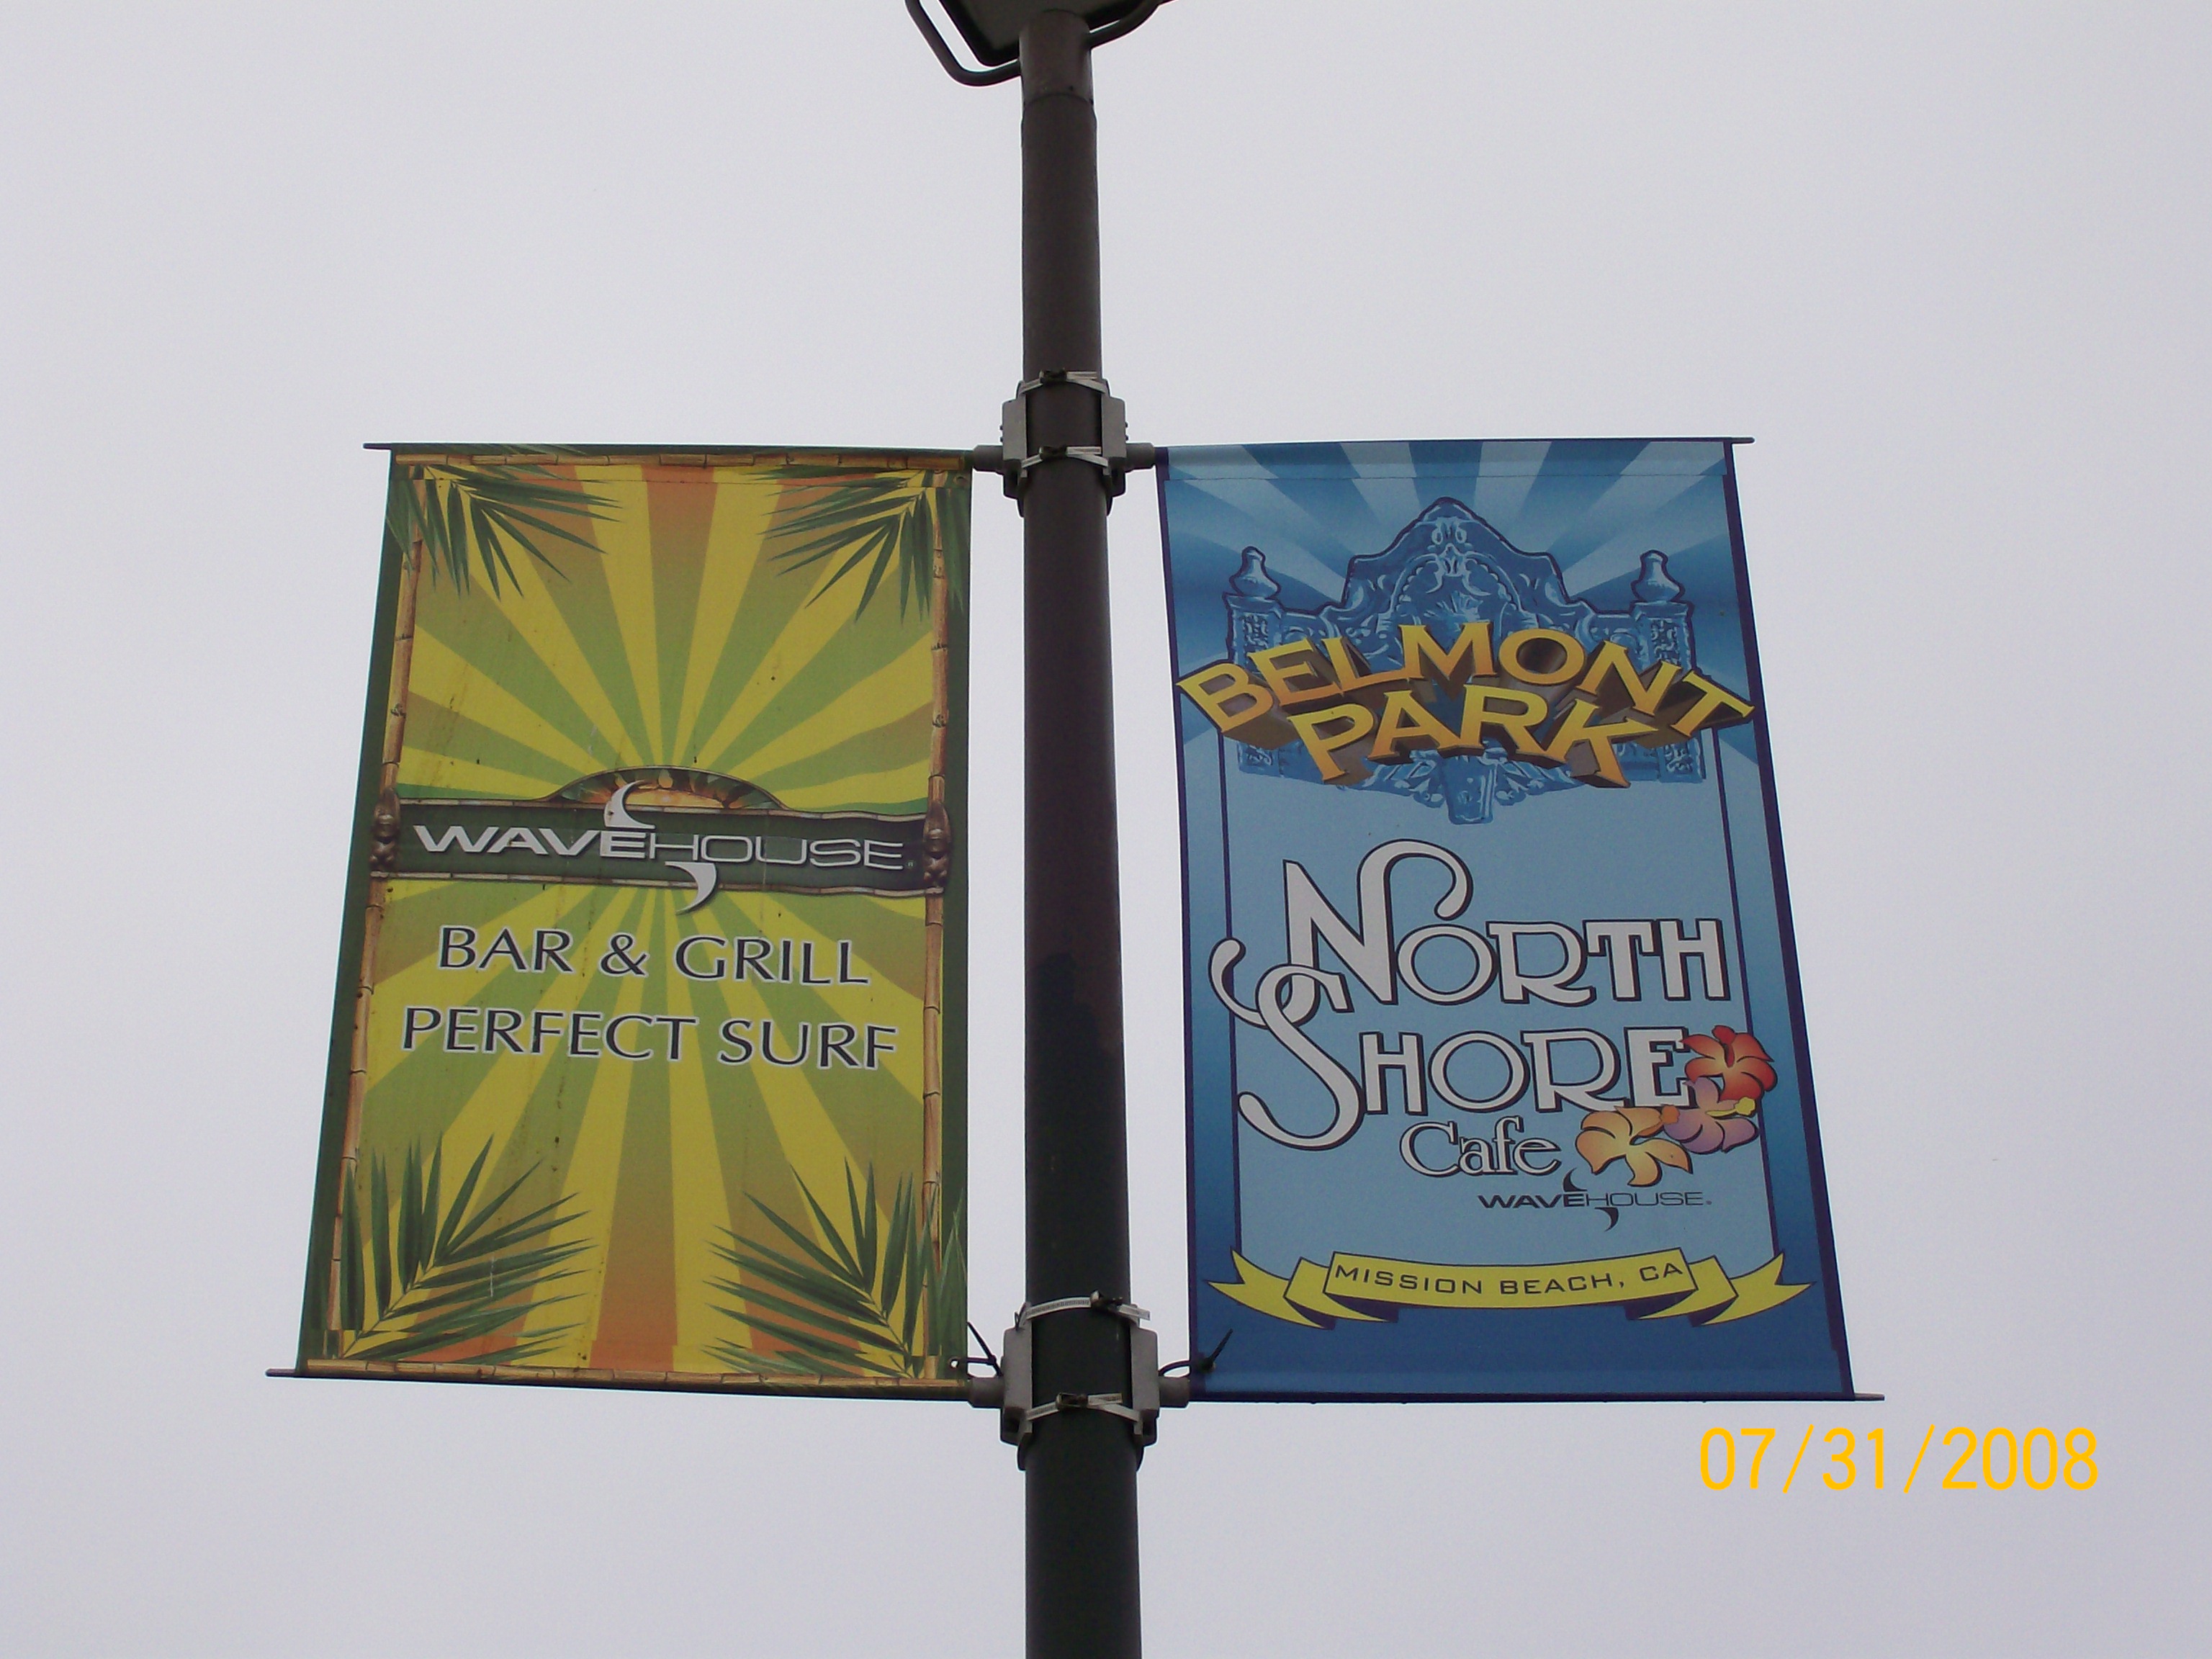 Belmont Park Pole Banners